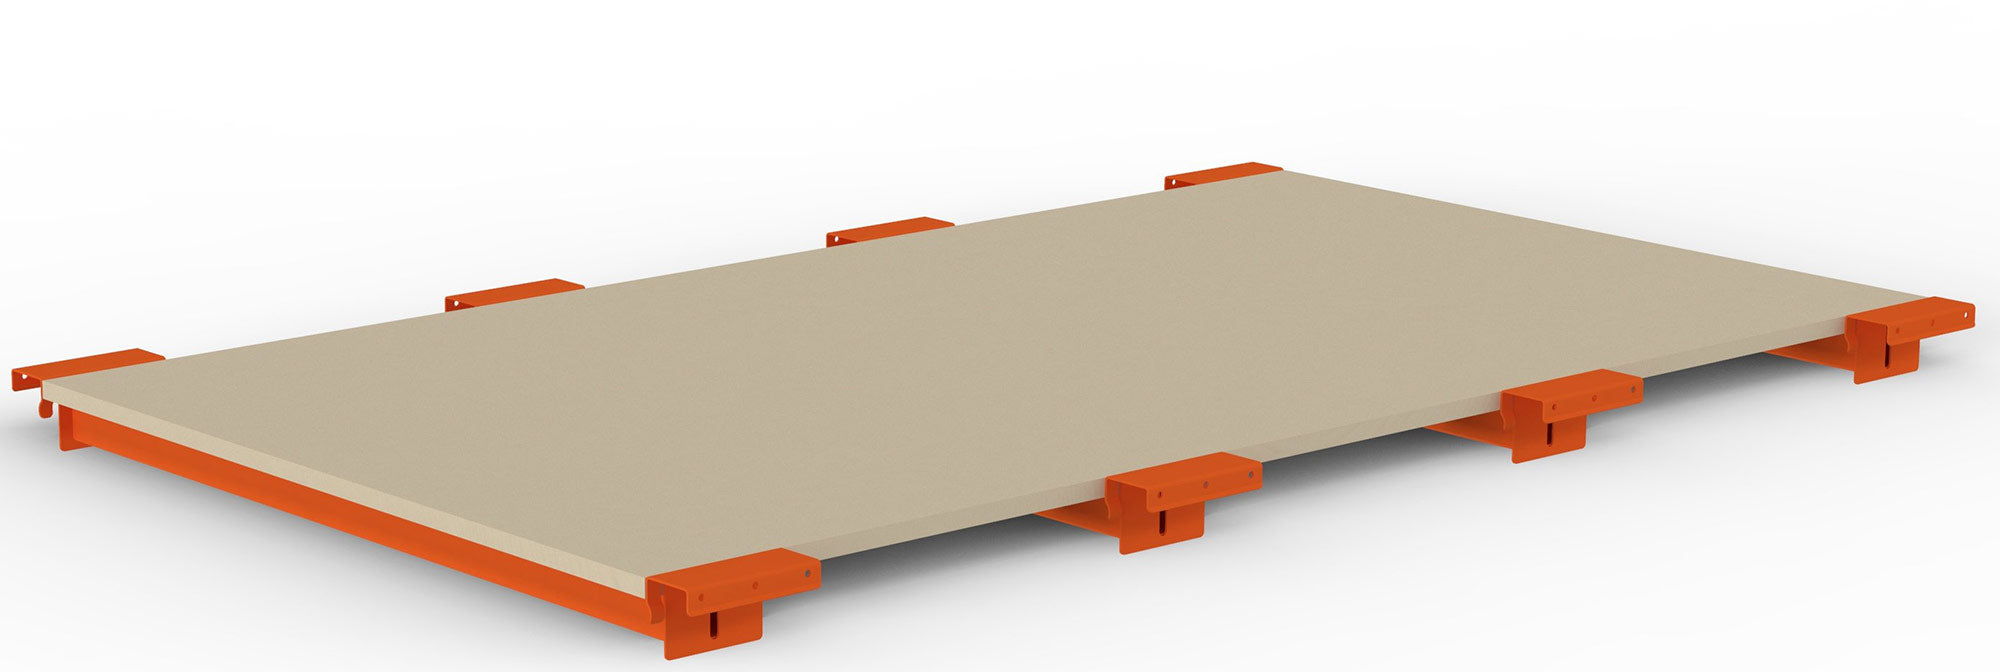 META Spanplattenboden 19 mm, mit abgesetzter Tiefenauflage, für Multipal Palettenregale - 200189933